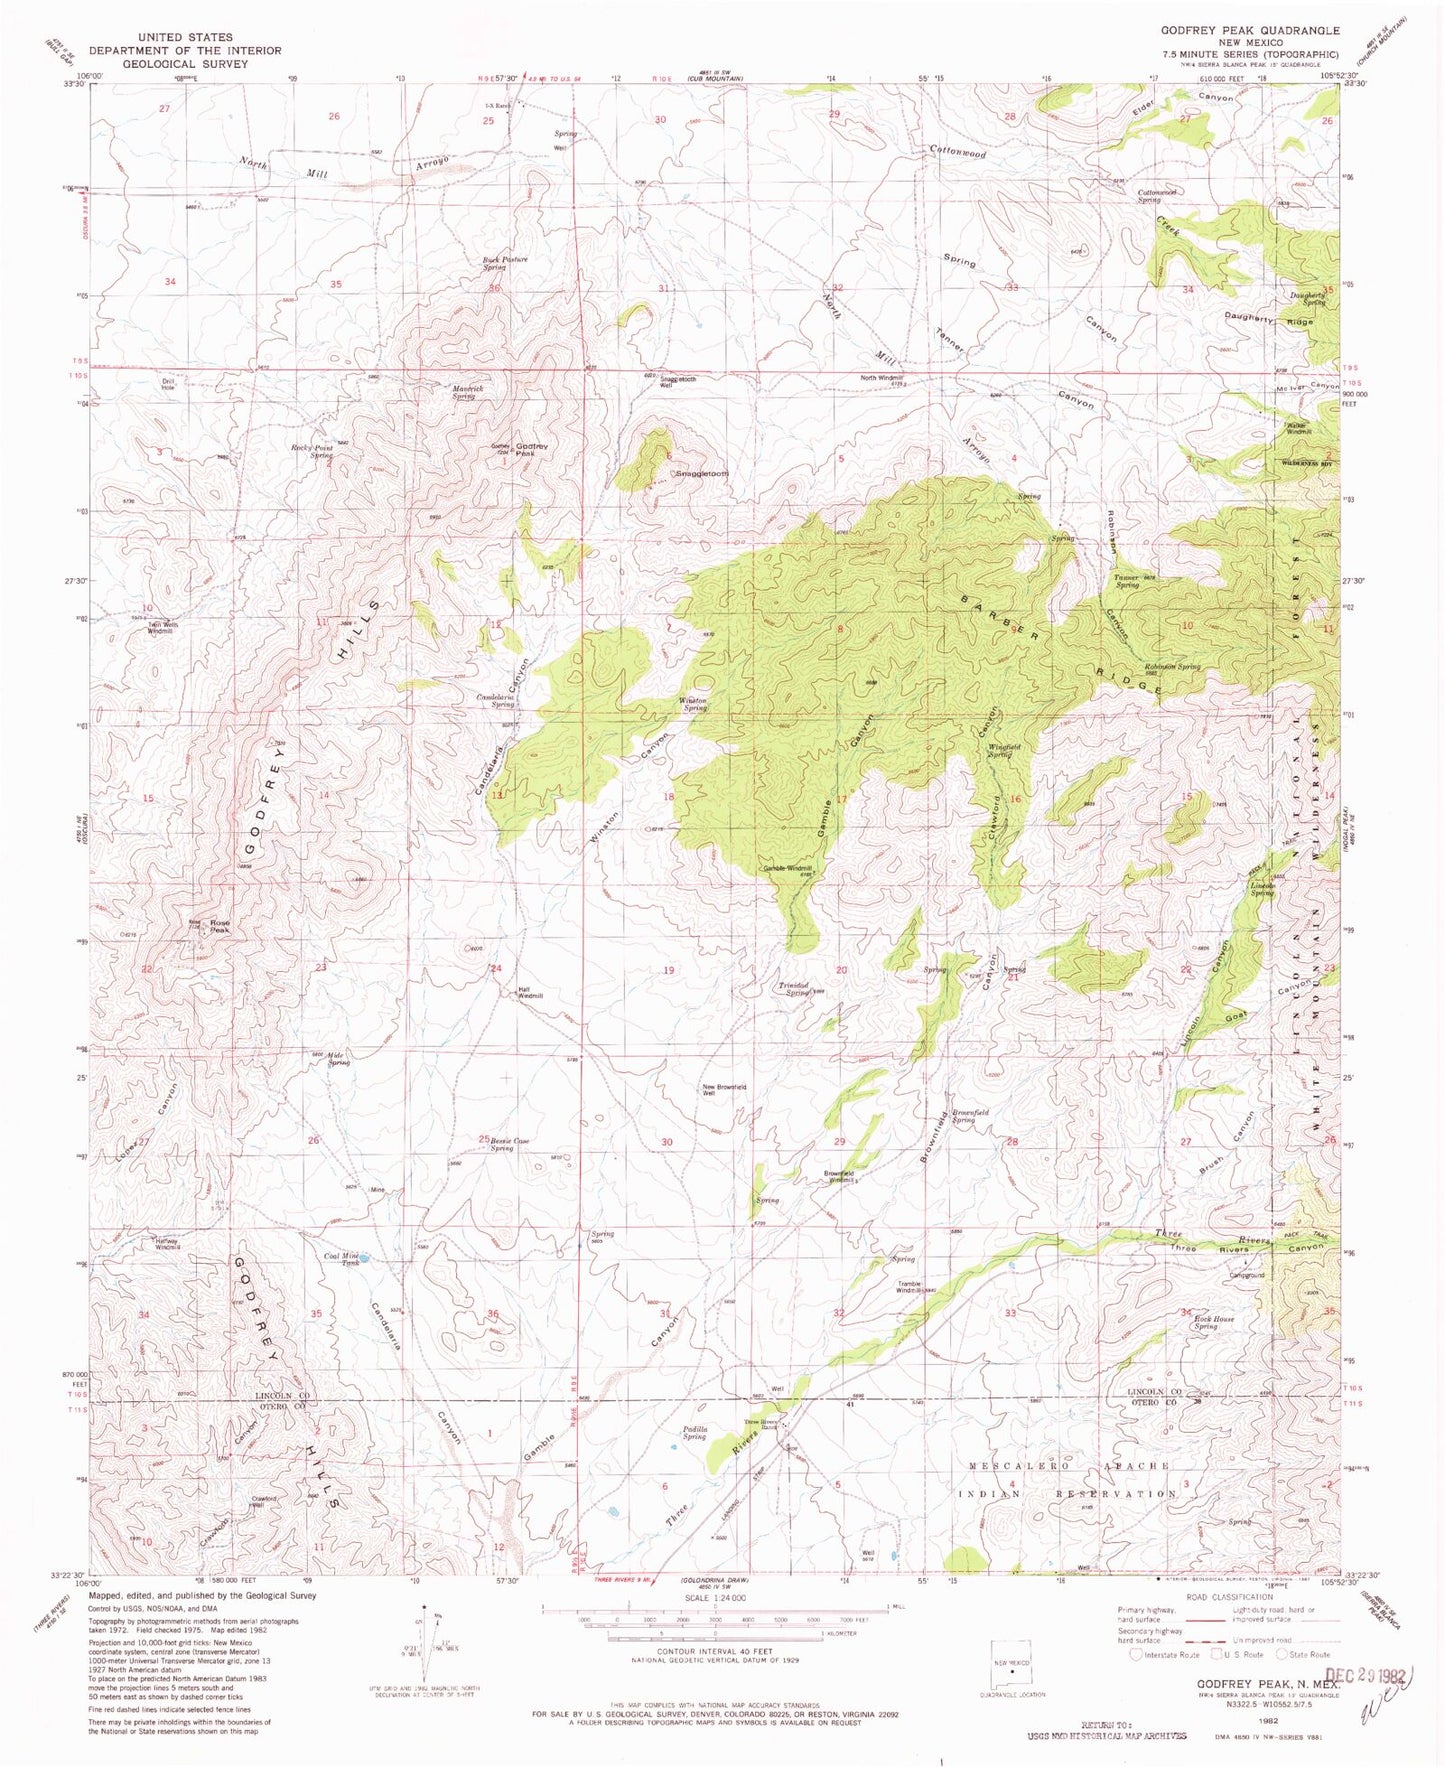 Classic USGS Godfrey Peak New Mexico 7.5'x7.5' Topo Map Image